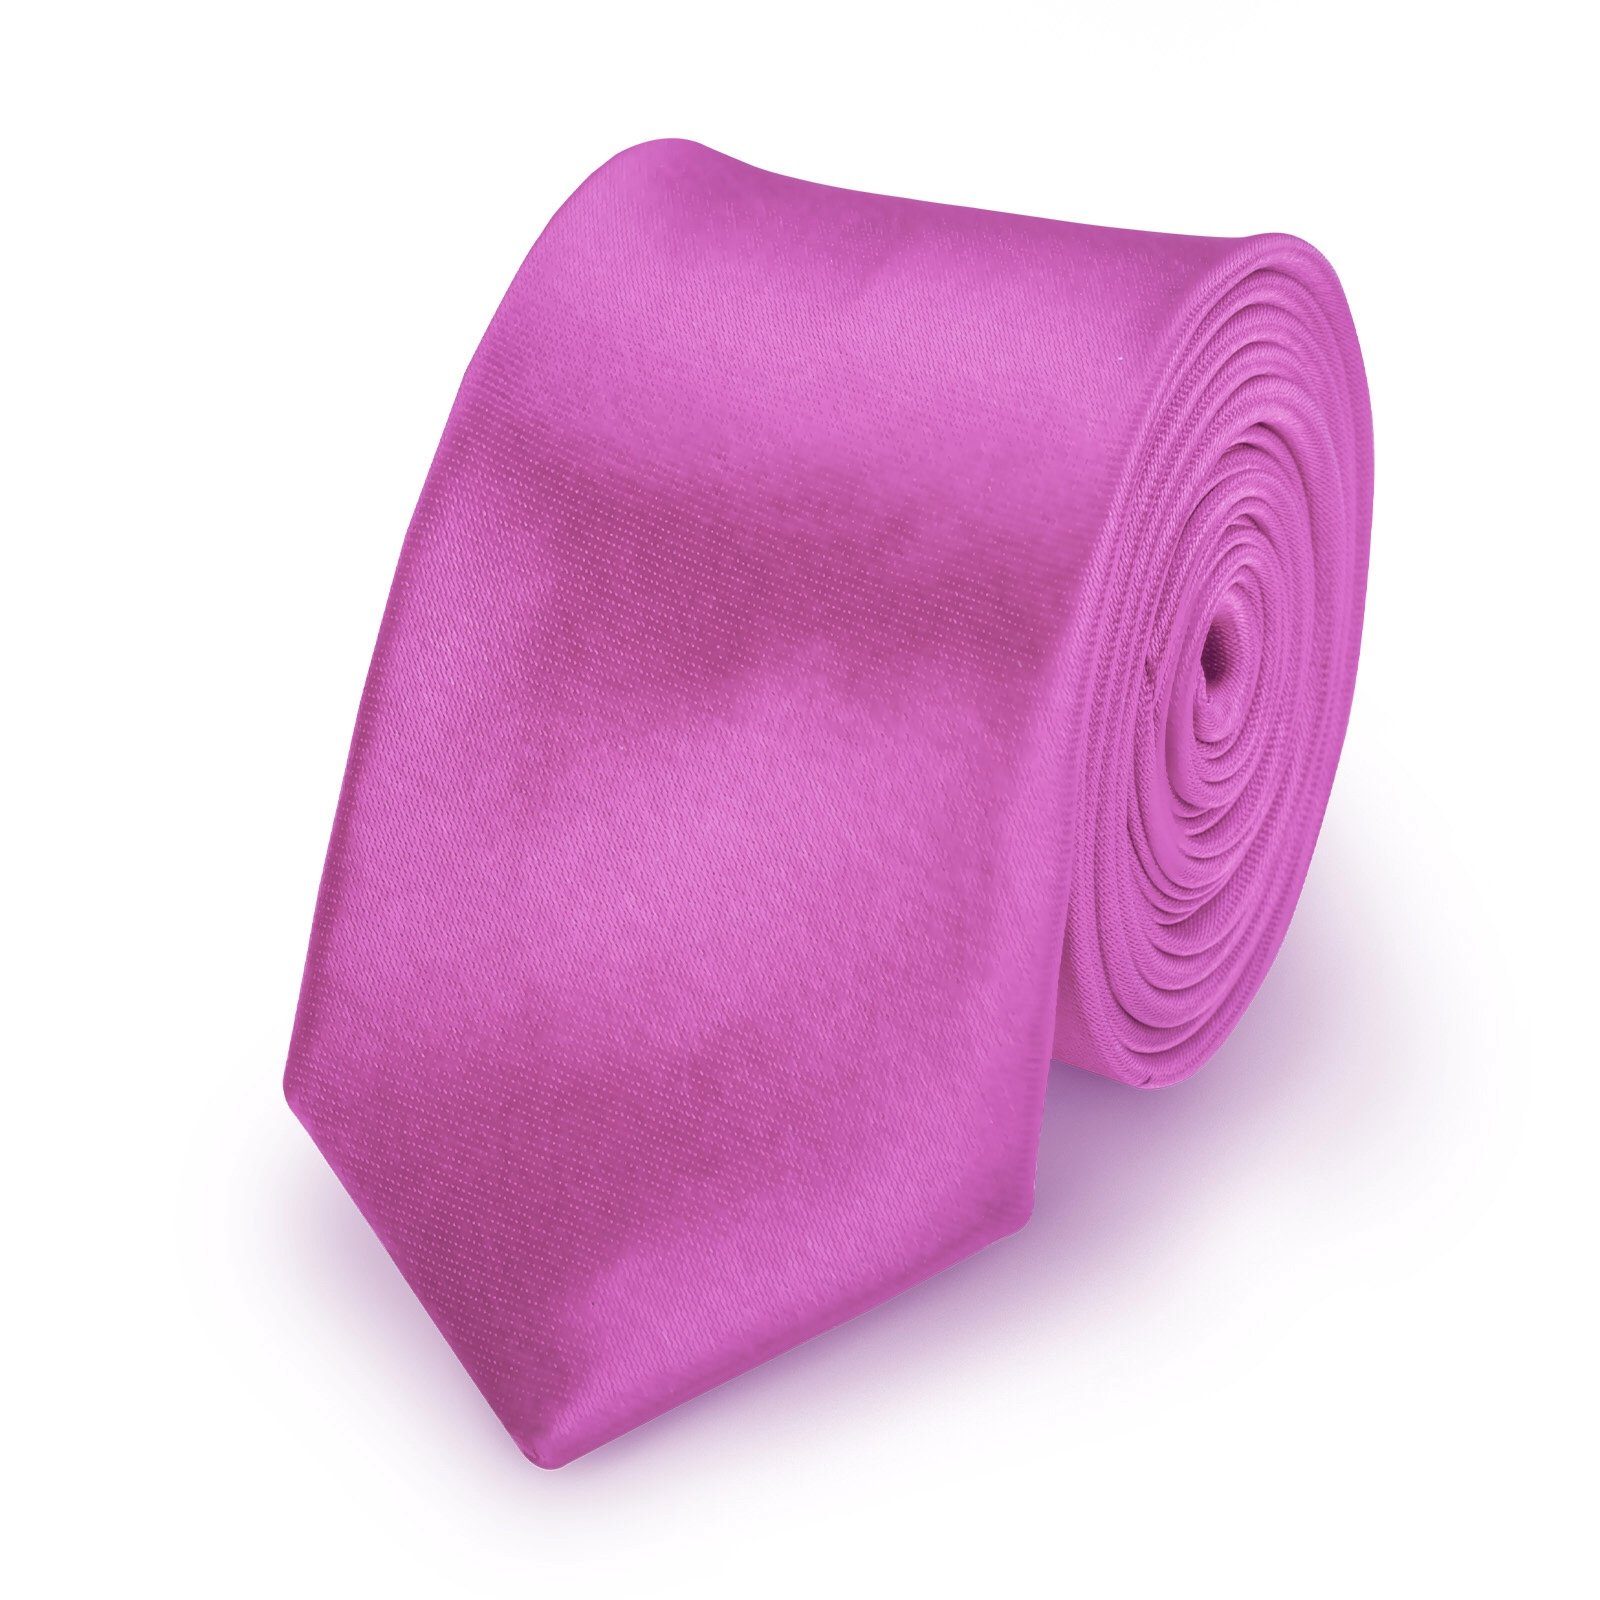 StickandShine Krawatte Krawatte Fliege Einstecktuch als SET 3 Teilig Uni aus Polyester 5 cm Breite / 148 cm Länge Einfarbig modern für Hochzeit Anzug (Krawatte Fliege und Einstecktuch, Spar-SET, 3 Teilig) SET Uni Helllila